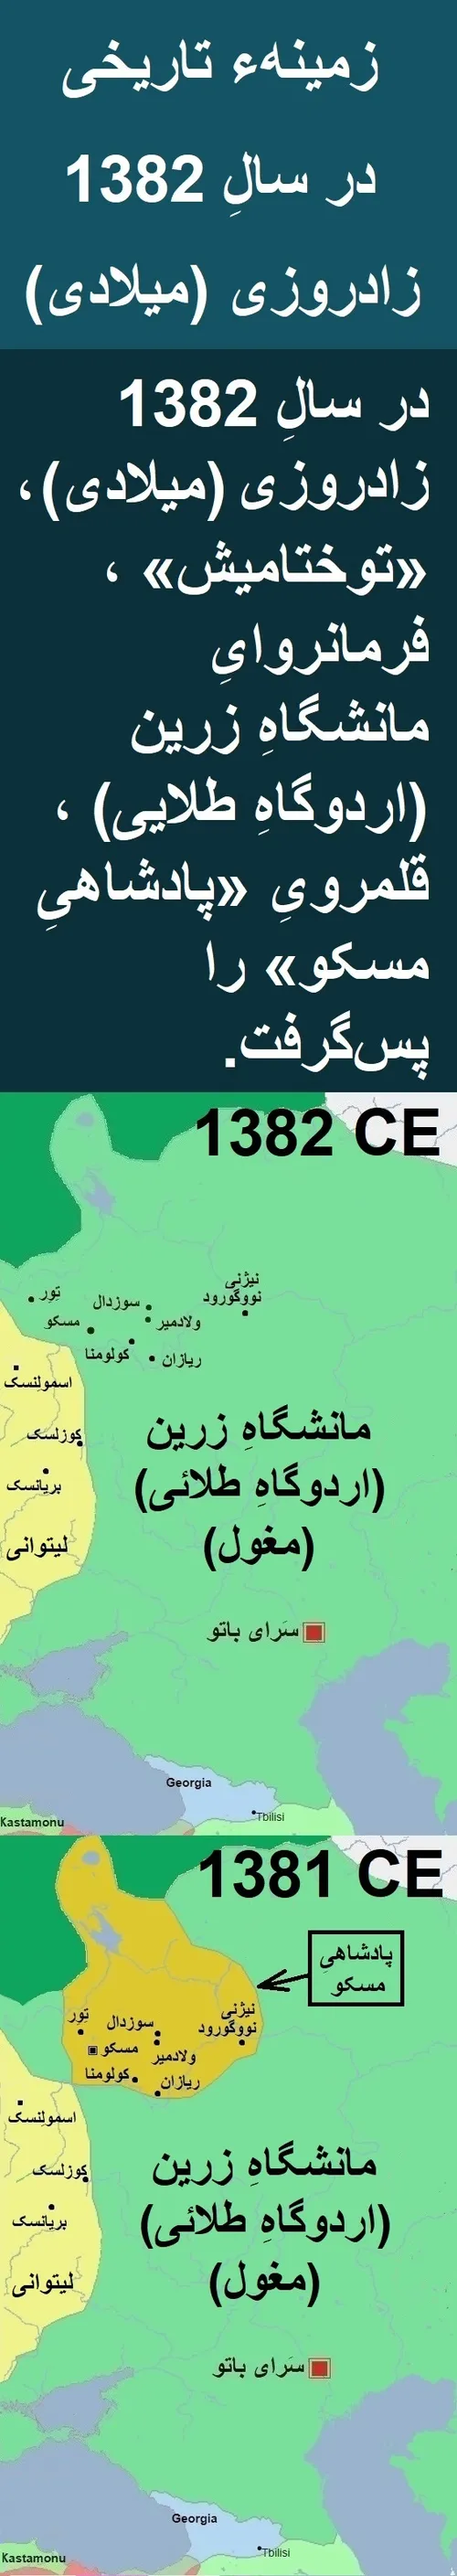 زمینهء تاریخی در سالِ 1382 زادروزی (میلادی)